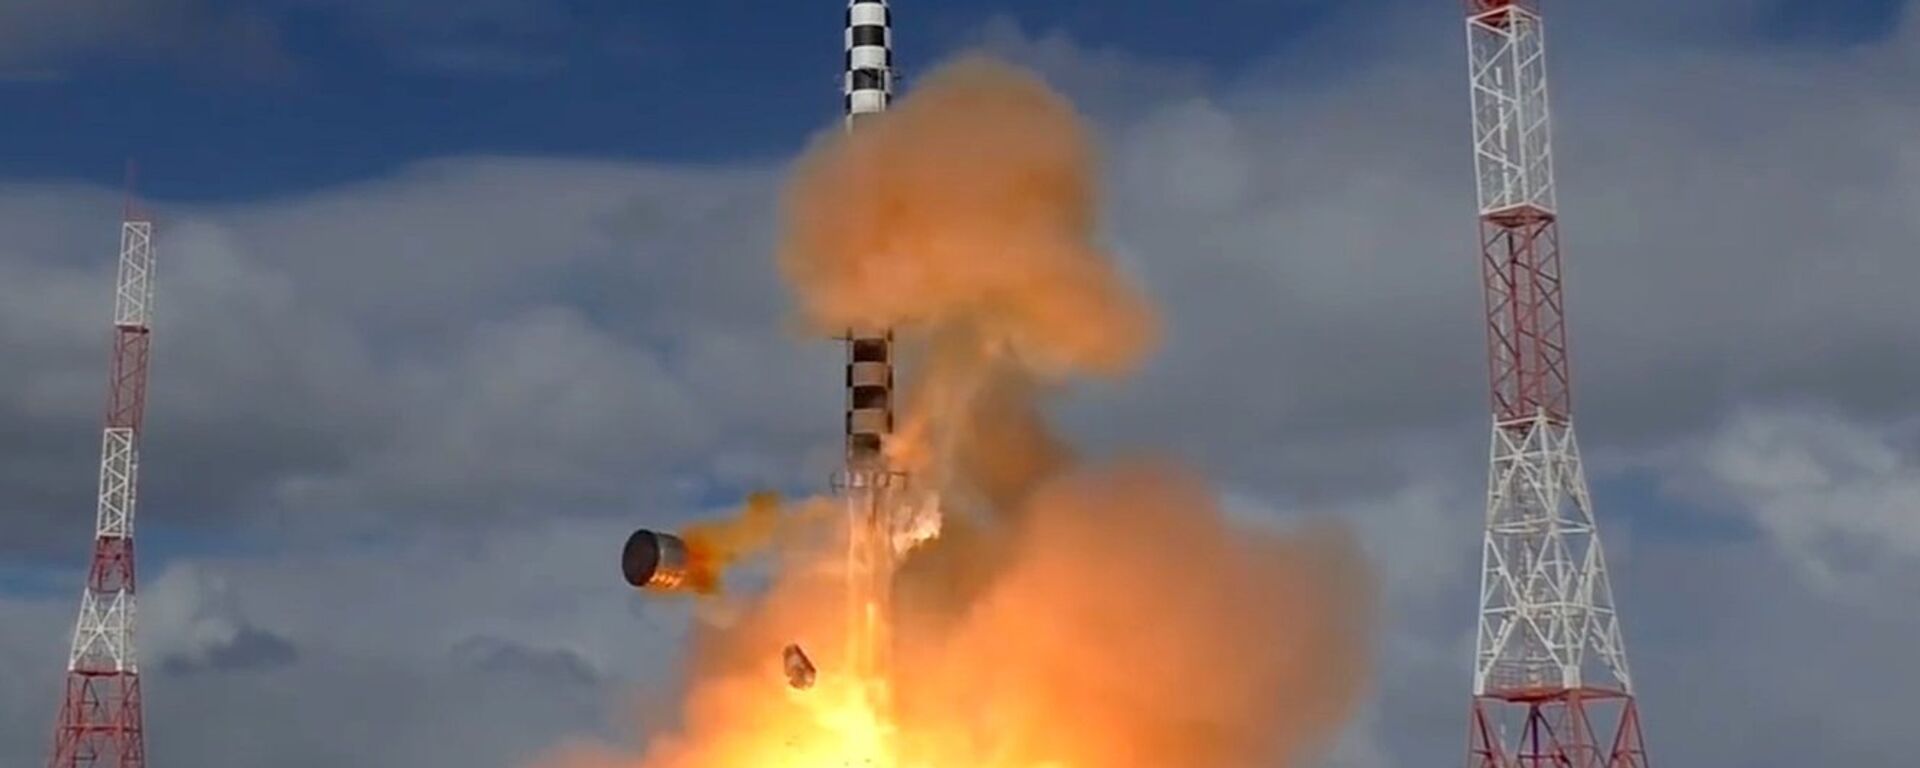 Запуск ракеты «Сармат» с космодрома «Плесецк» - Sputnik Грузия, 1920, 28.06.2021